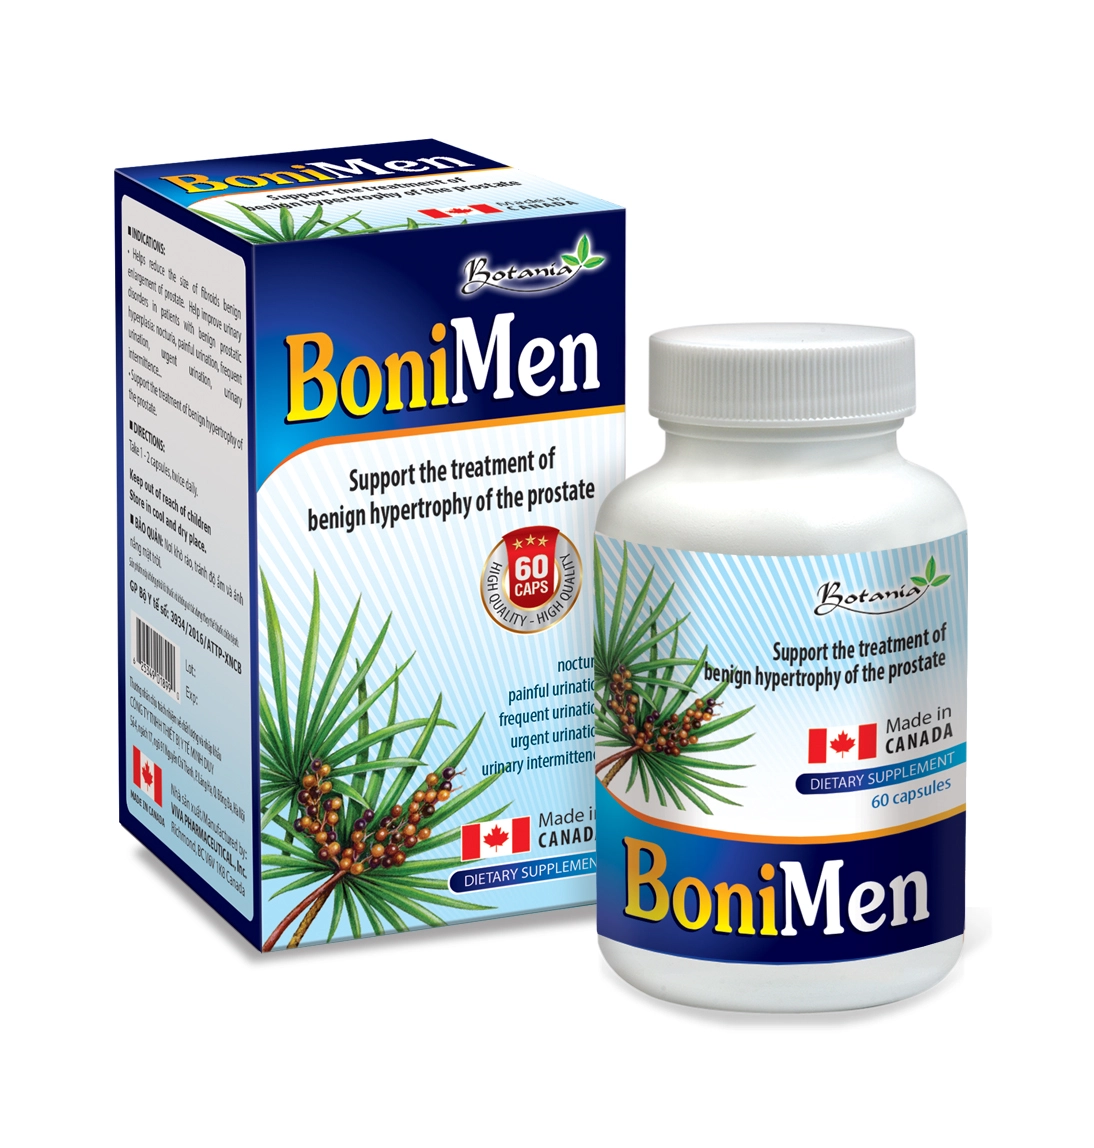 BoniMen (Hộp 30 viên - Nhập khẩu chính hãng Canada) - Viên uống giúp giảm kích thước và triệu chứng phì đại tiền liệt tuyến